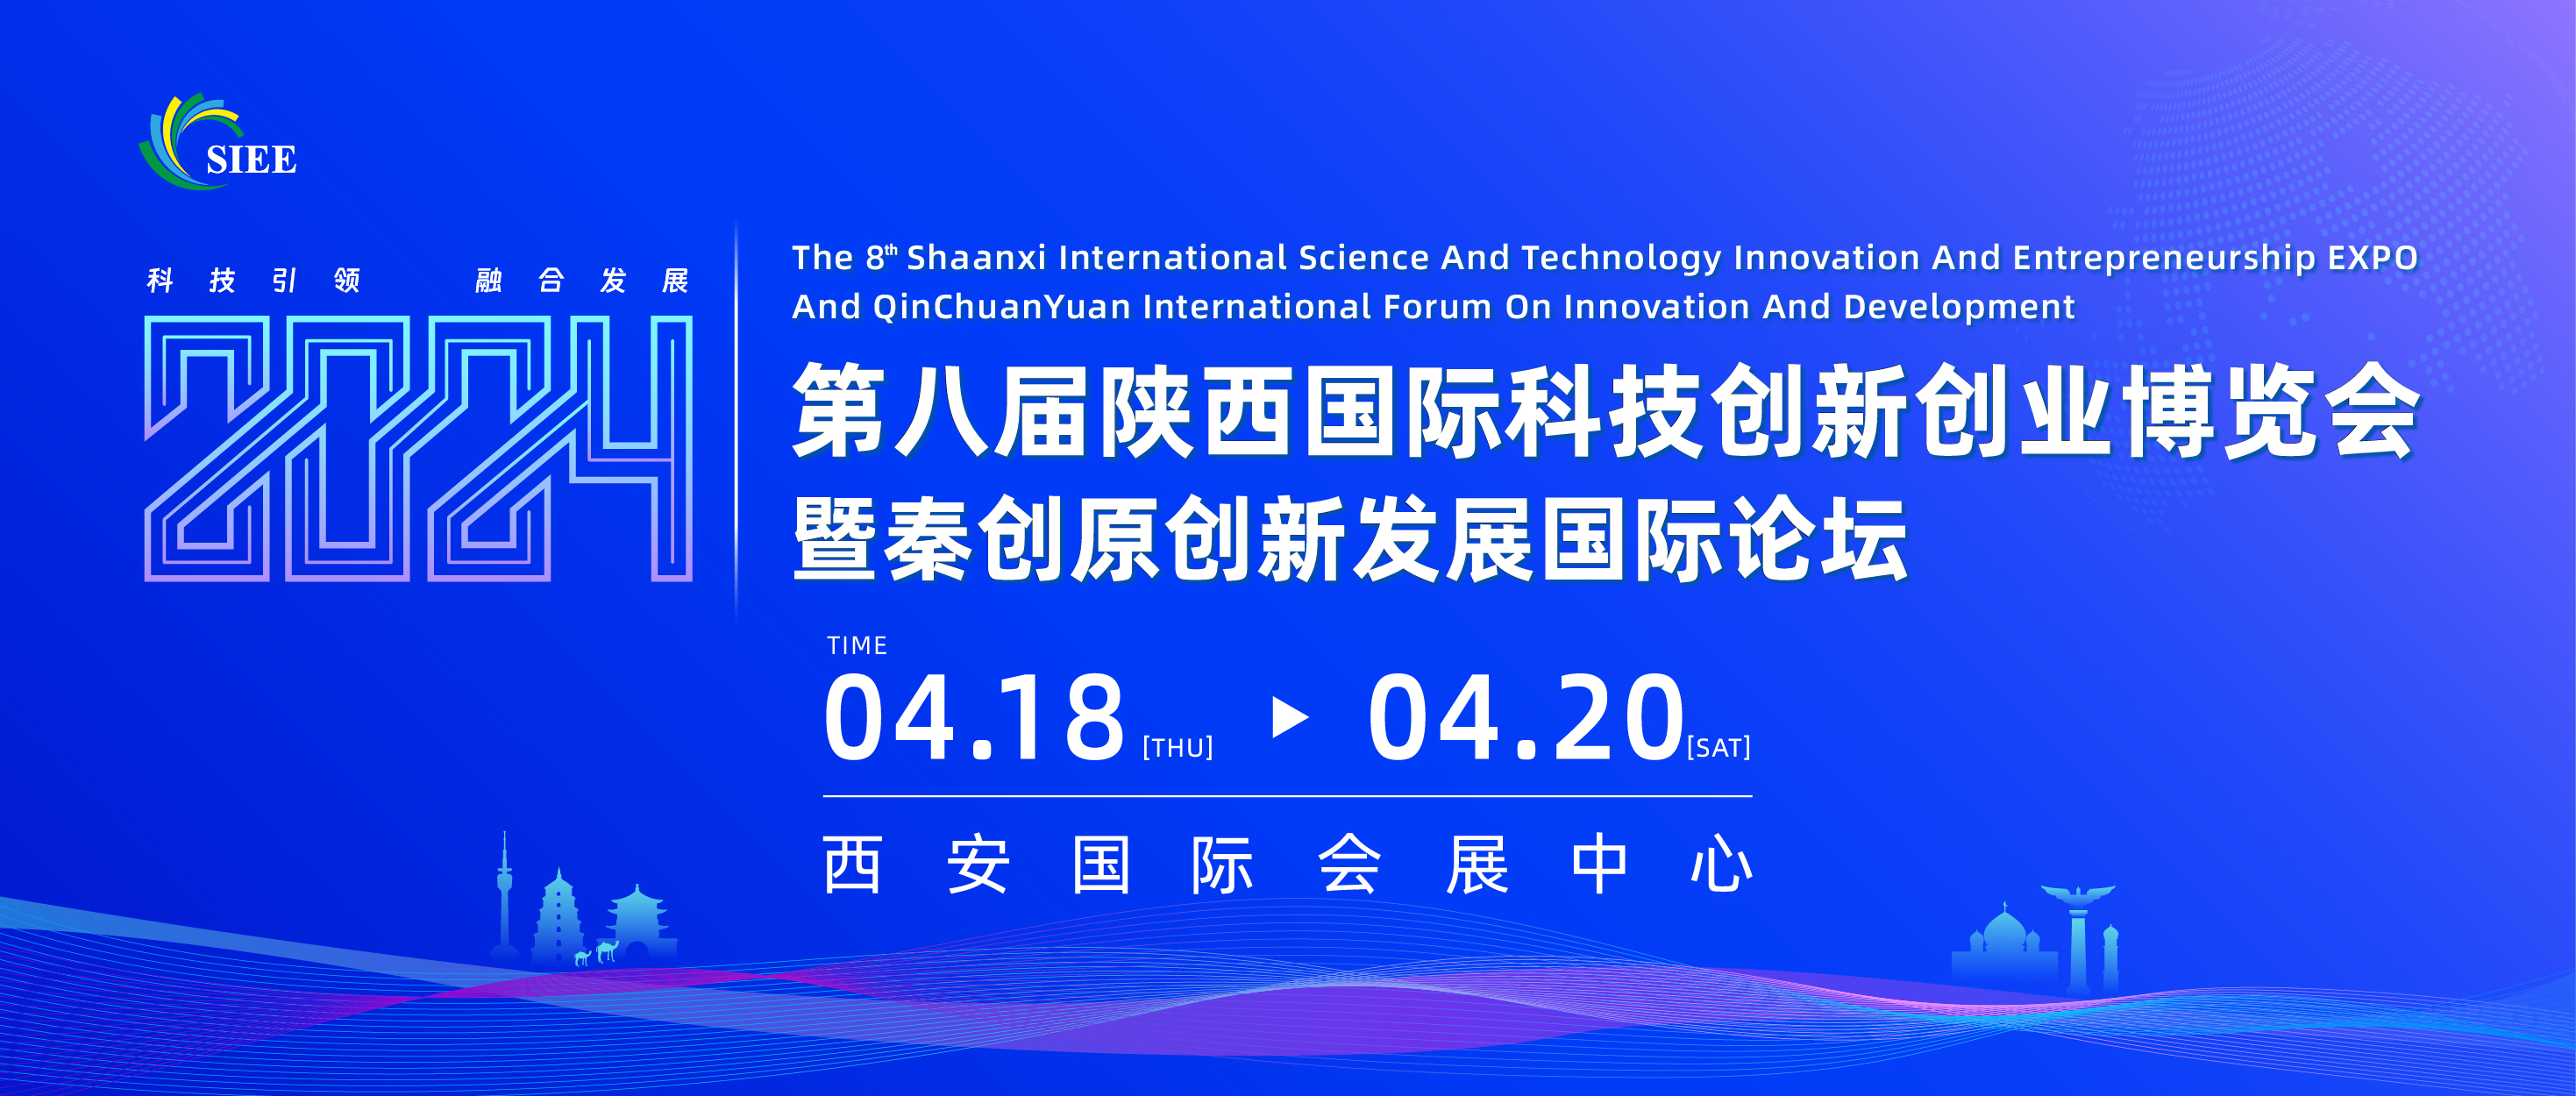 展会抢先看|第八届陕西国际科技创新创业博览会暨秦创原创新发展国际论坛将于4月18日在西安开幕